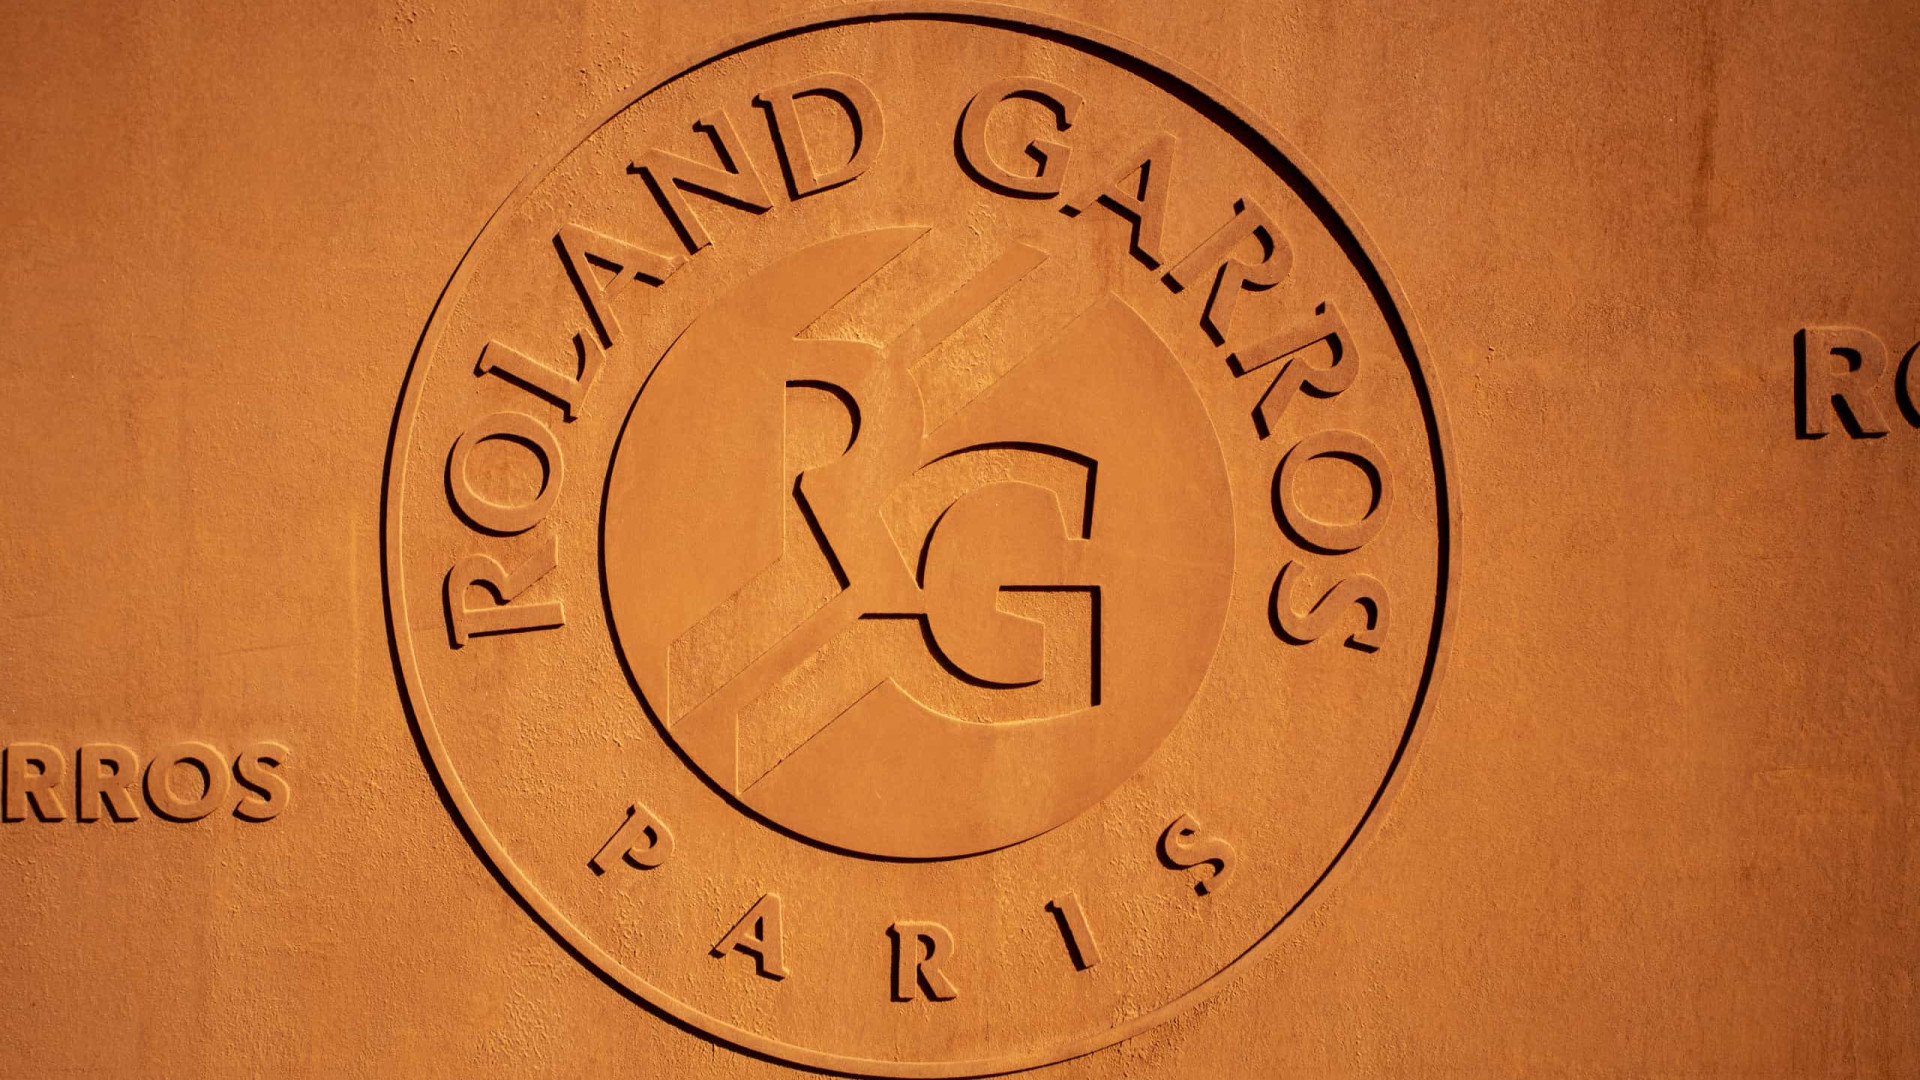 Roland Garros pede teste negativo de covid-19 e terá maior público na 2ª semana